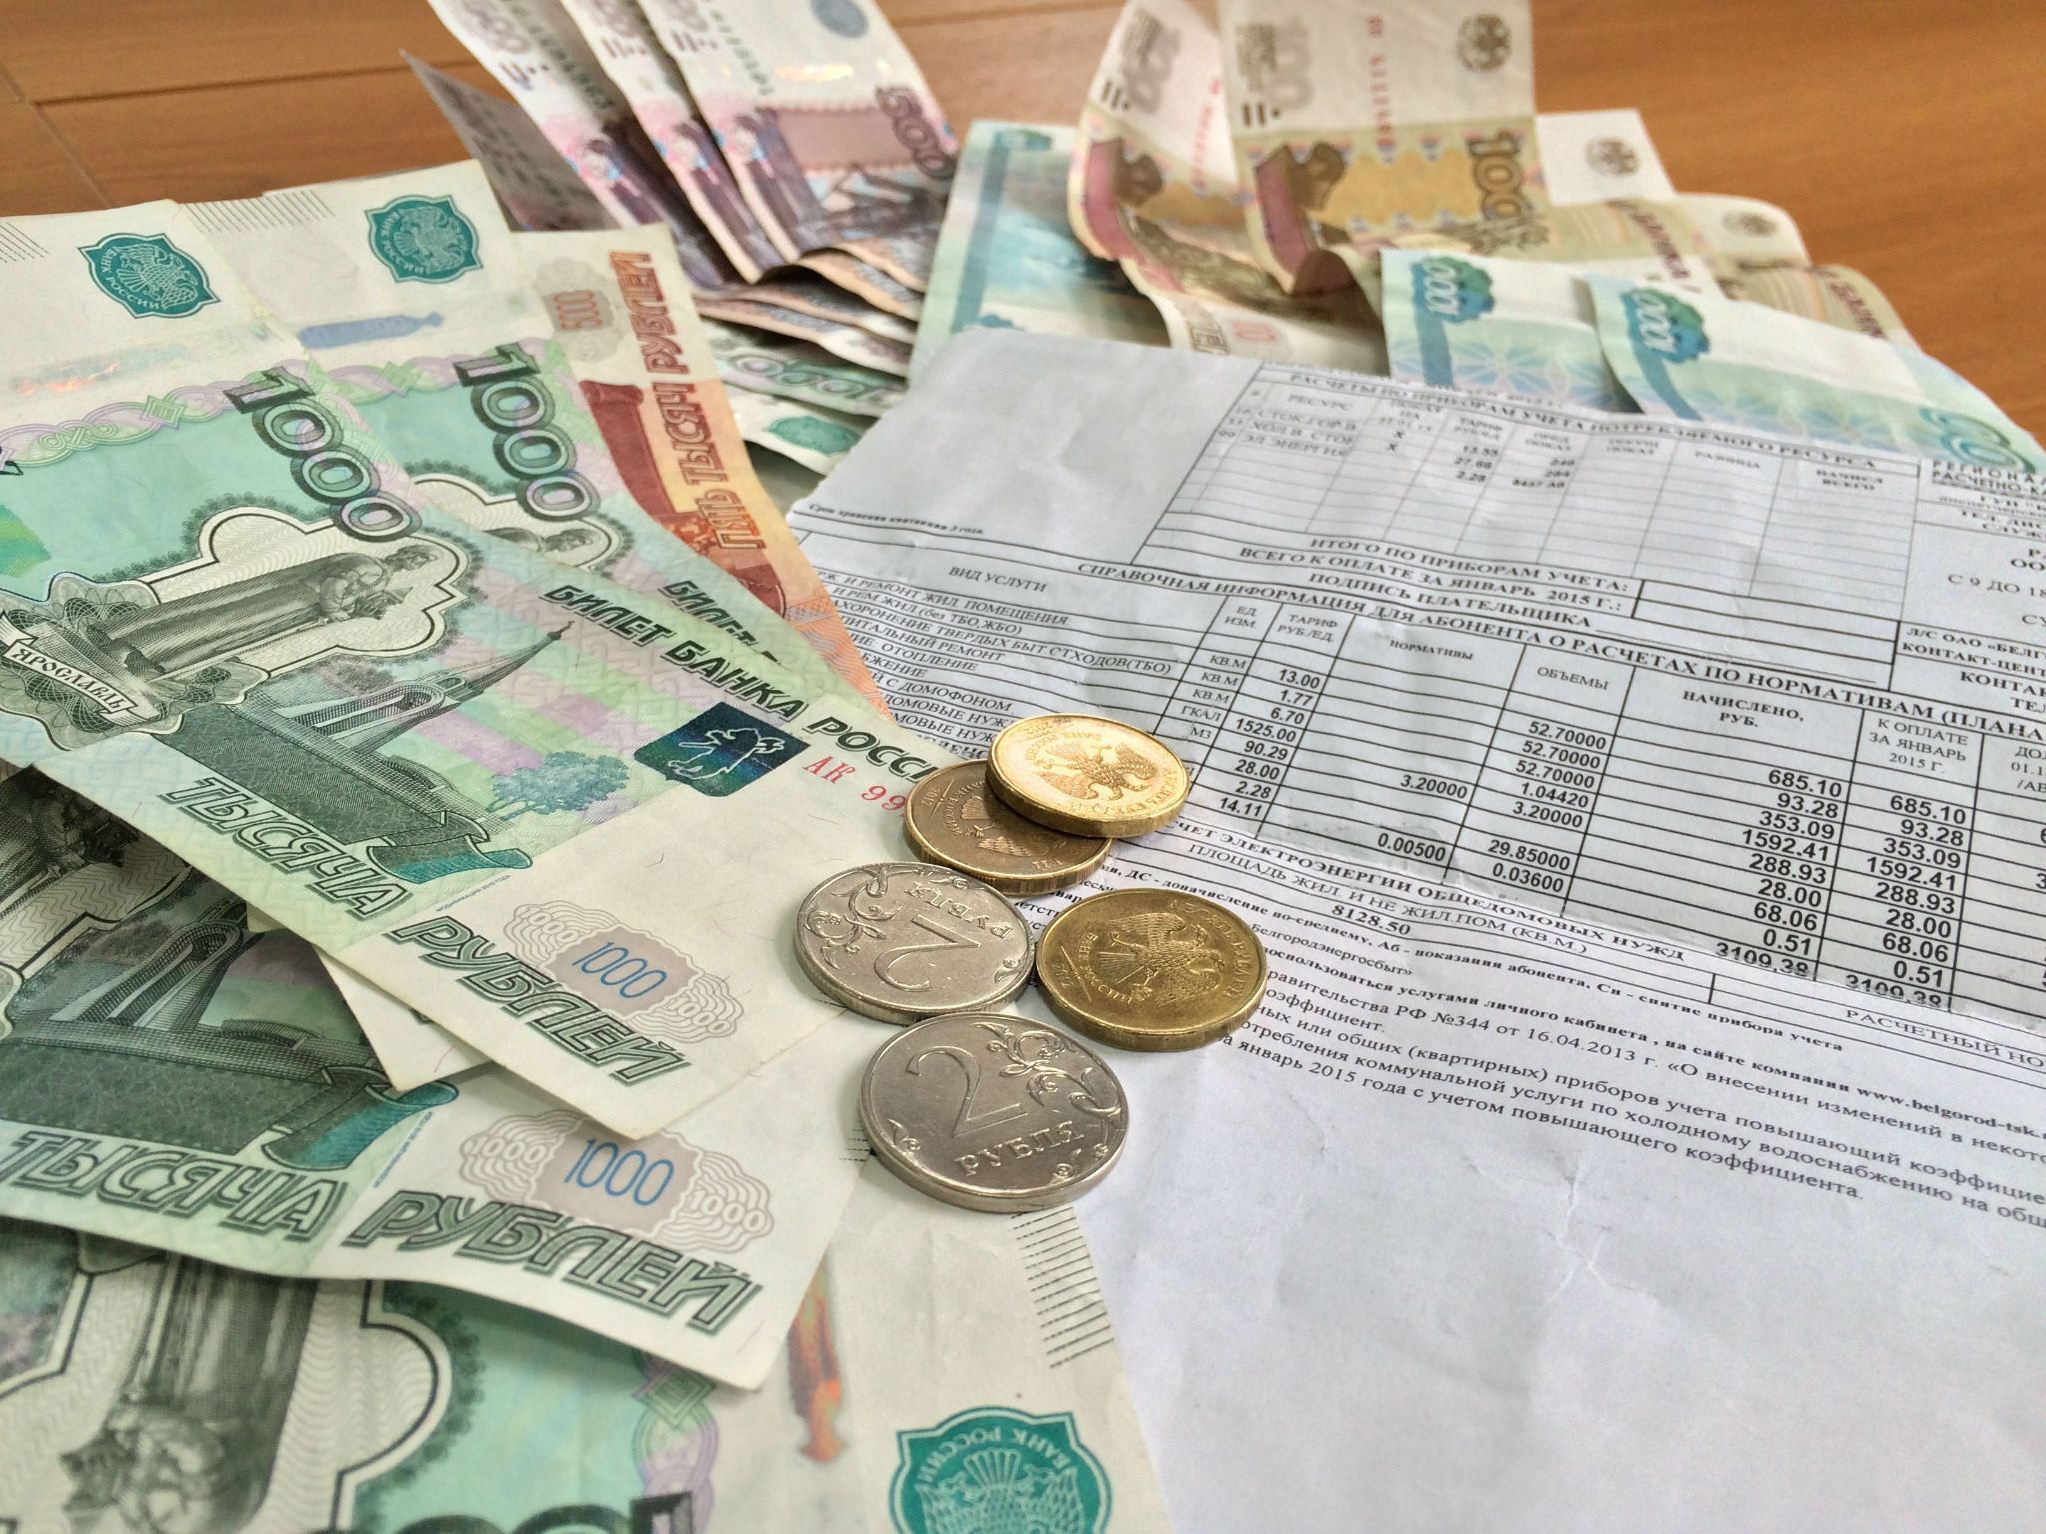 Тарифы на ЖКУ в Москве увеличатся с 1 июля 2017 года. Размер оплаты за воду, газ, свет, отопление